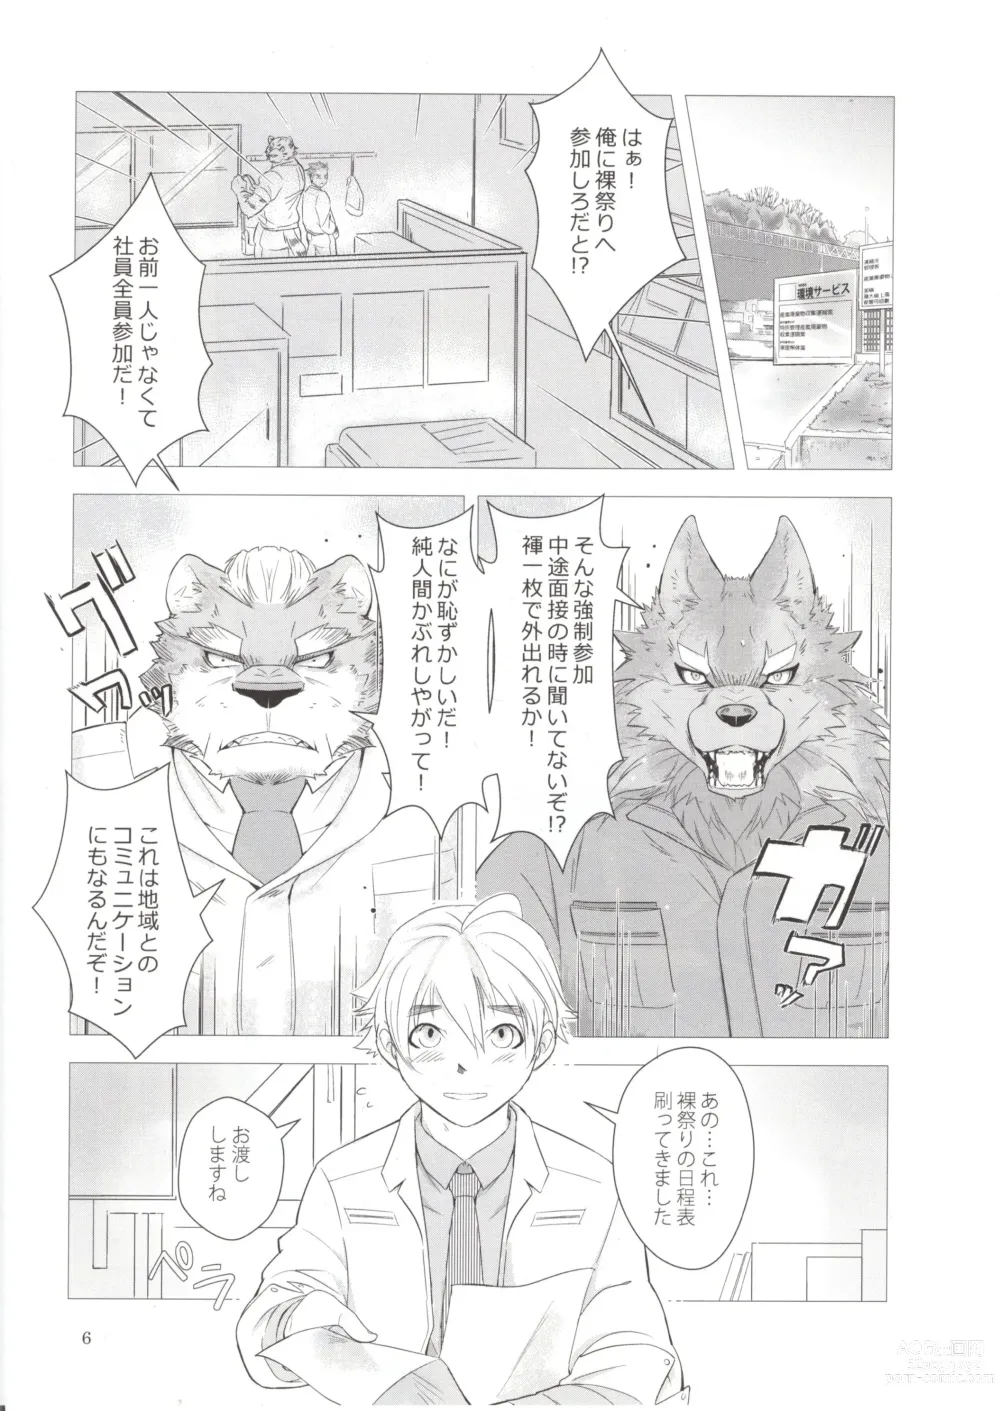 Page 5 of doujinshi Otoko Matsuri vol. 5